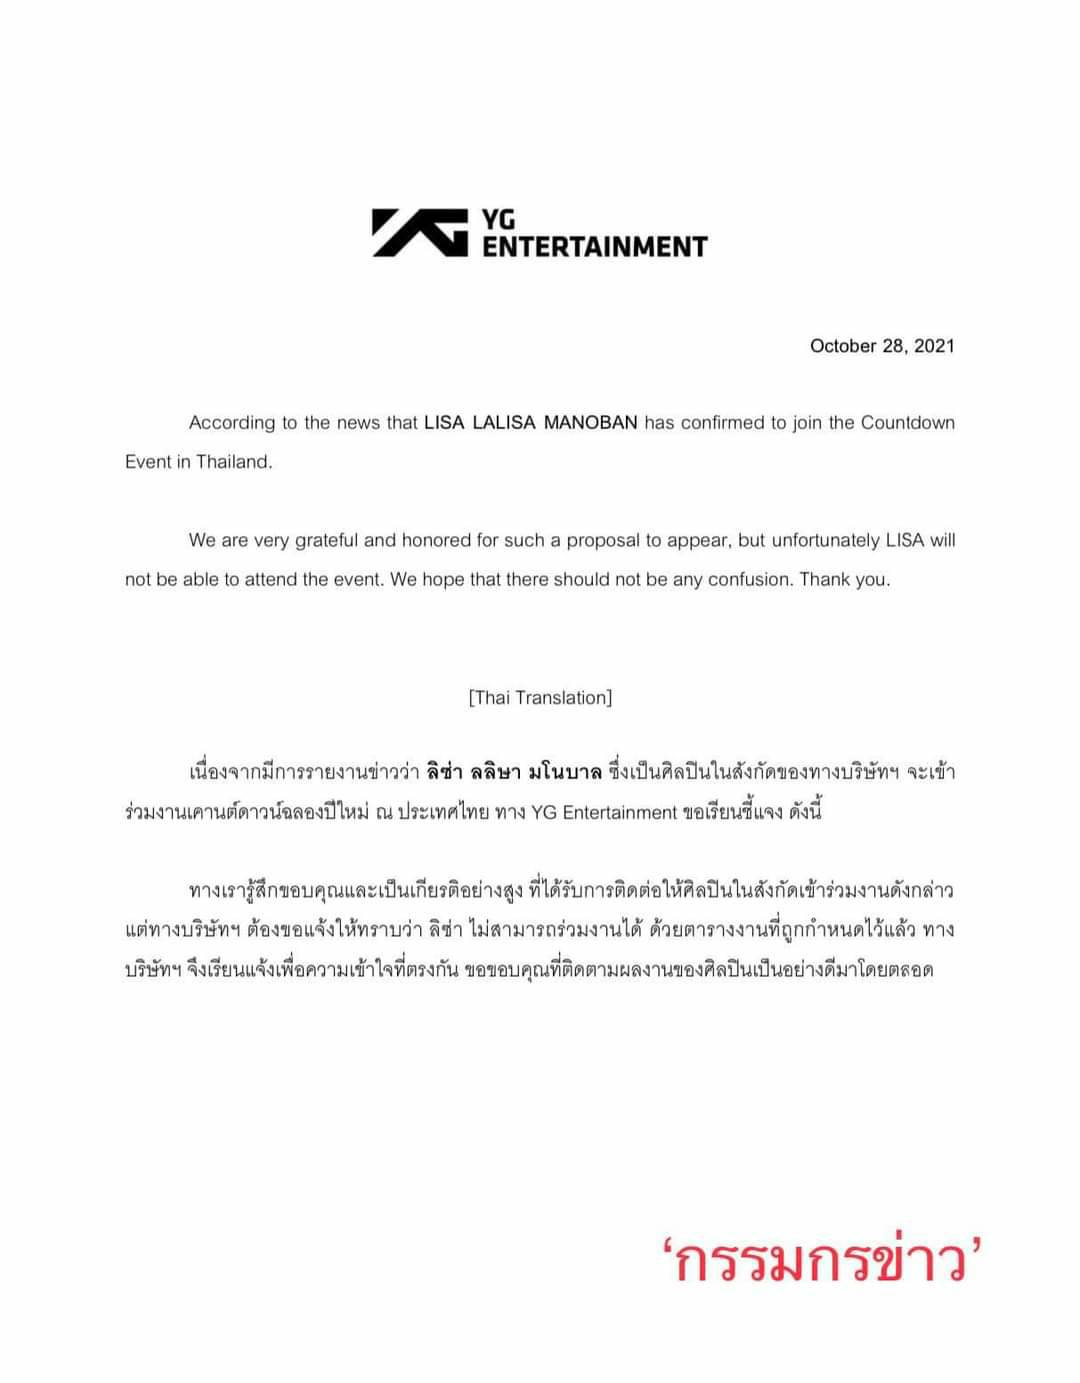 YG แจ้งข่าว ลิซ่า BLACKPINK ไม่สามารถร่วมงาน Countdown ประเทศไทยได้